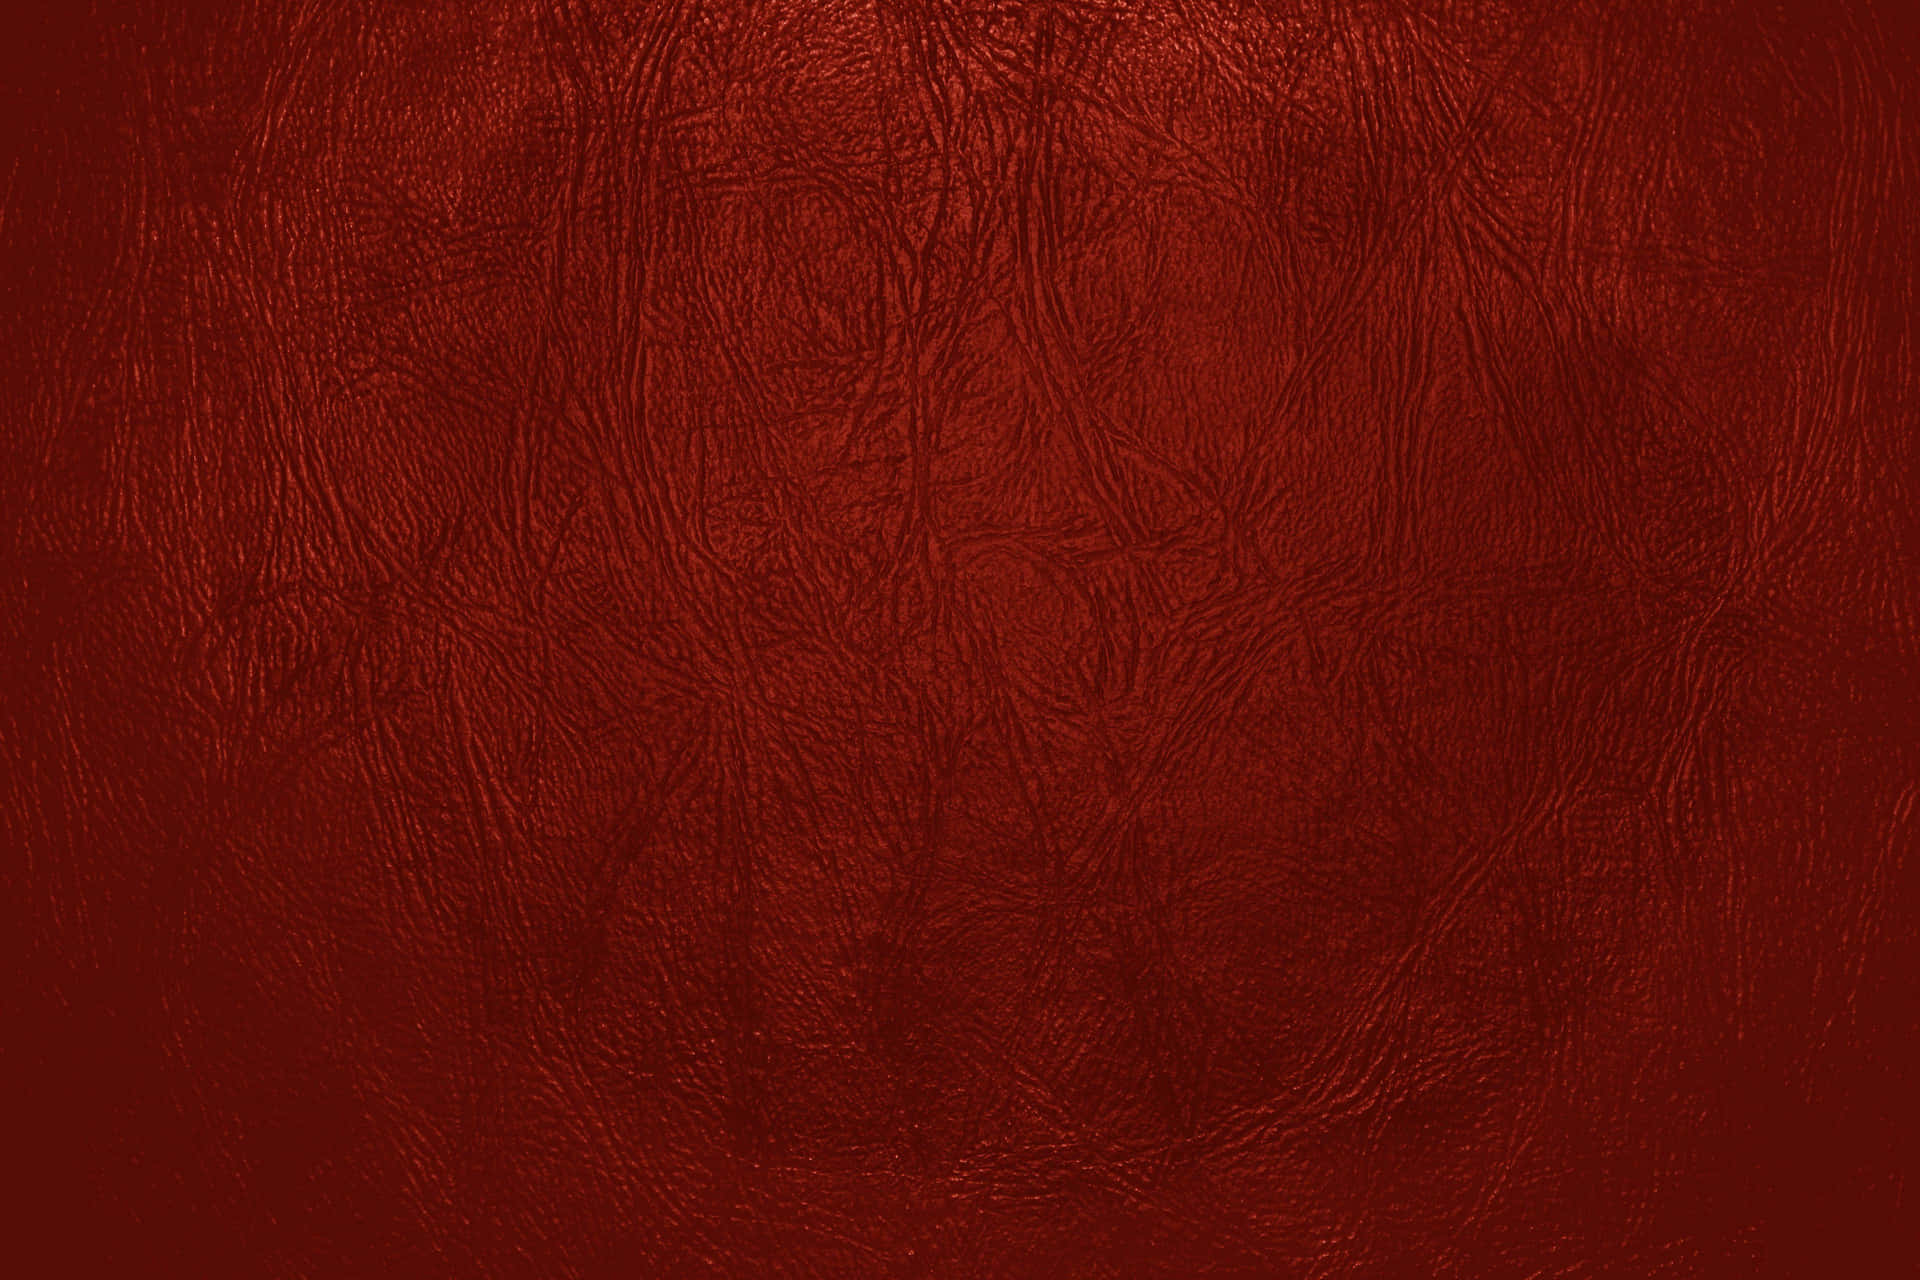 Riccae Dettagliata Texture Di Pelle Rossa Come Il Sangue Sfondo